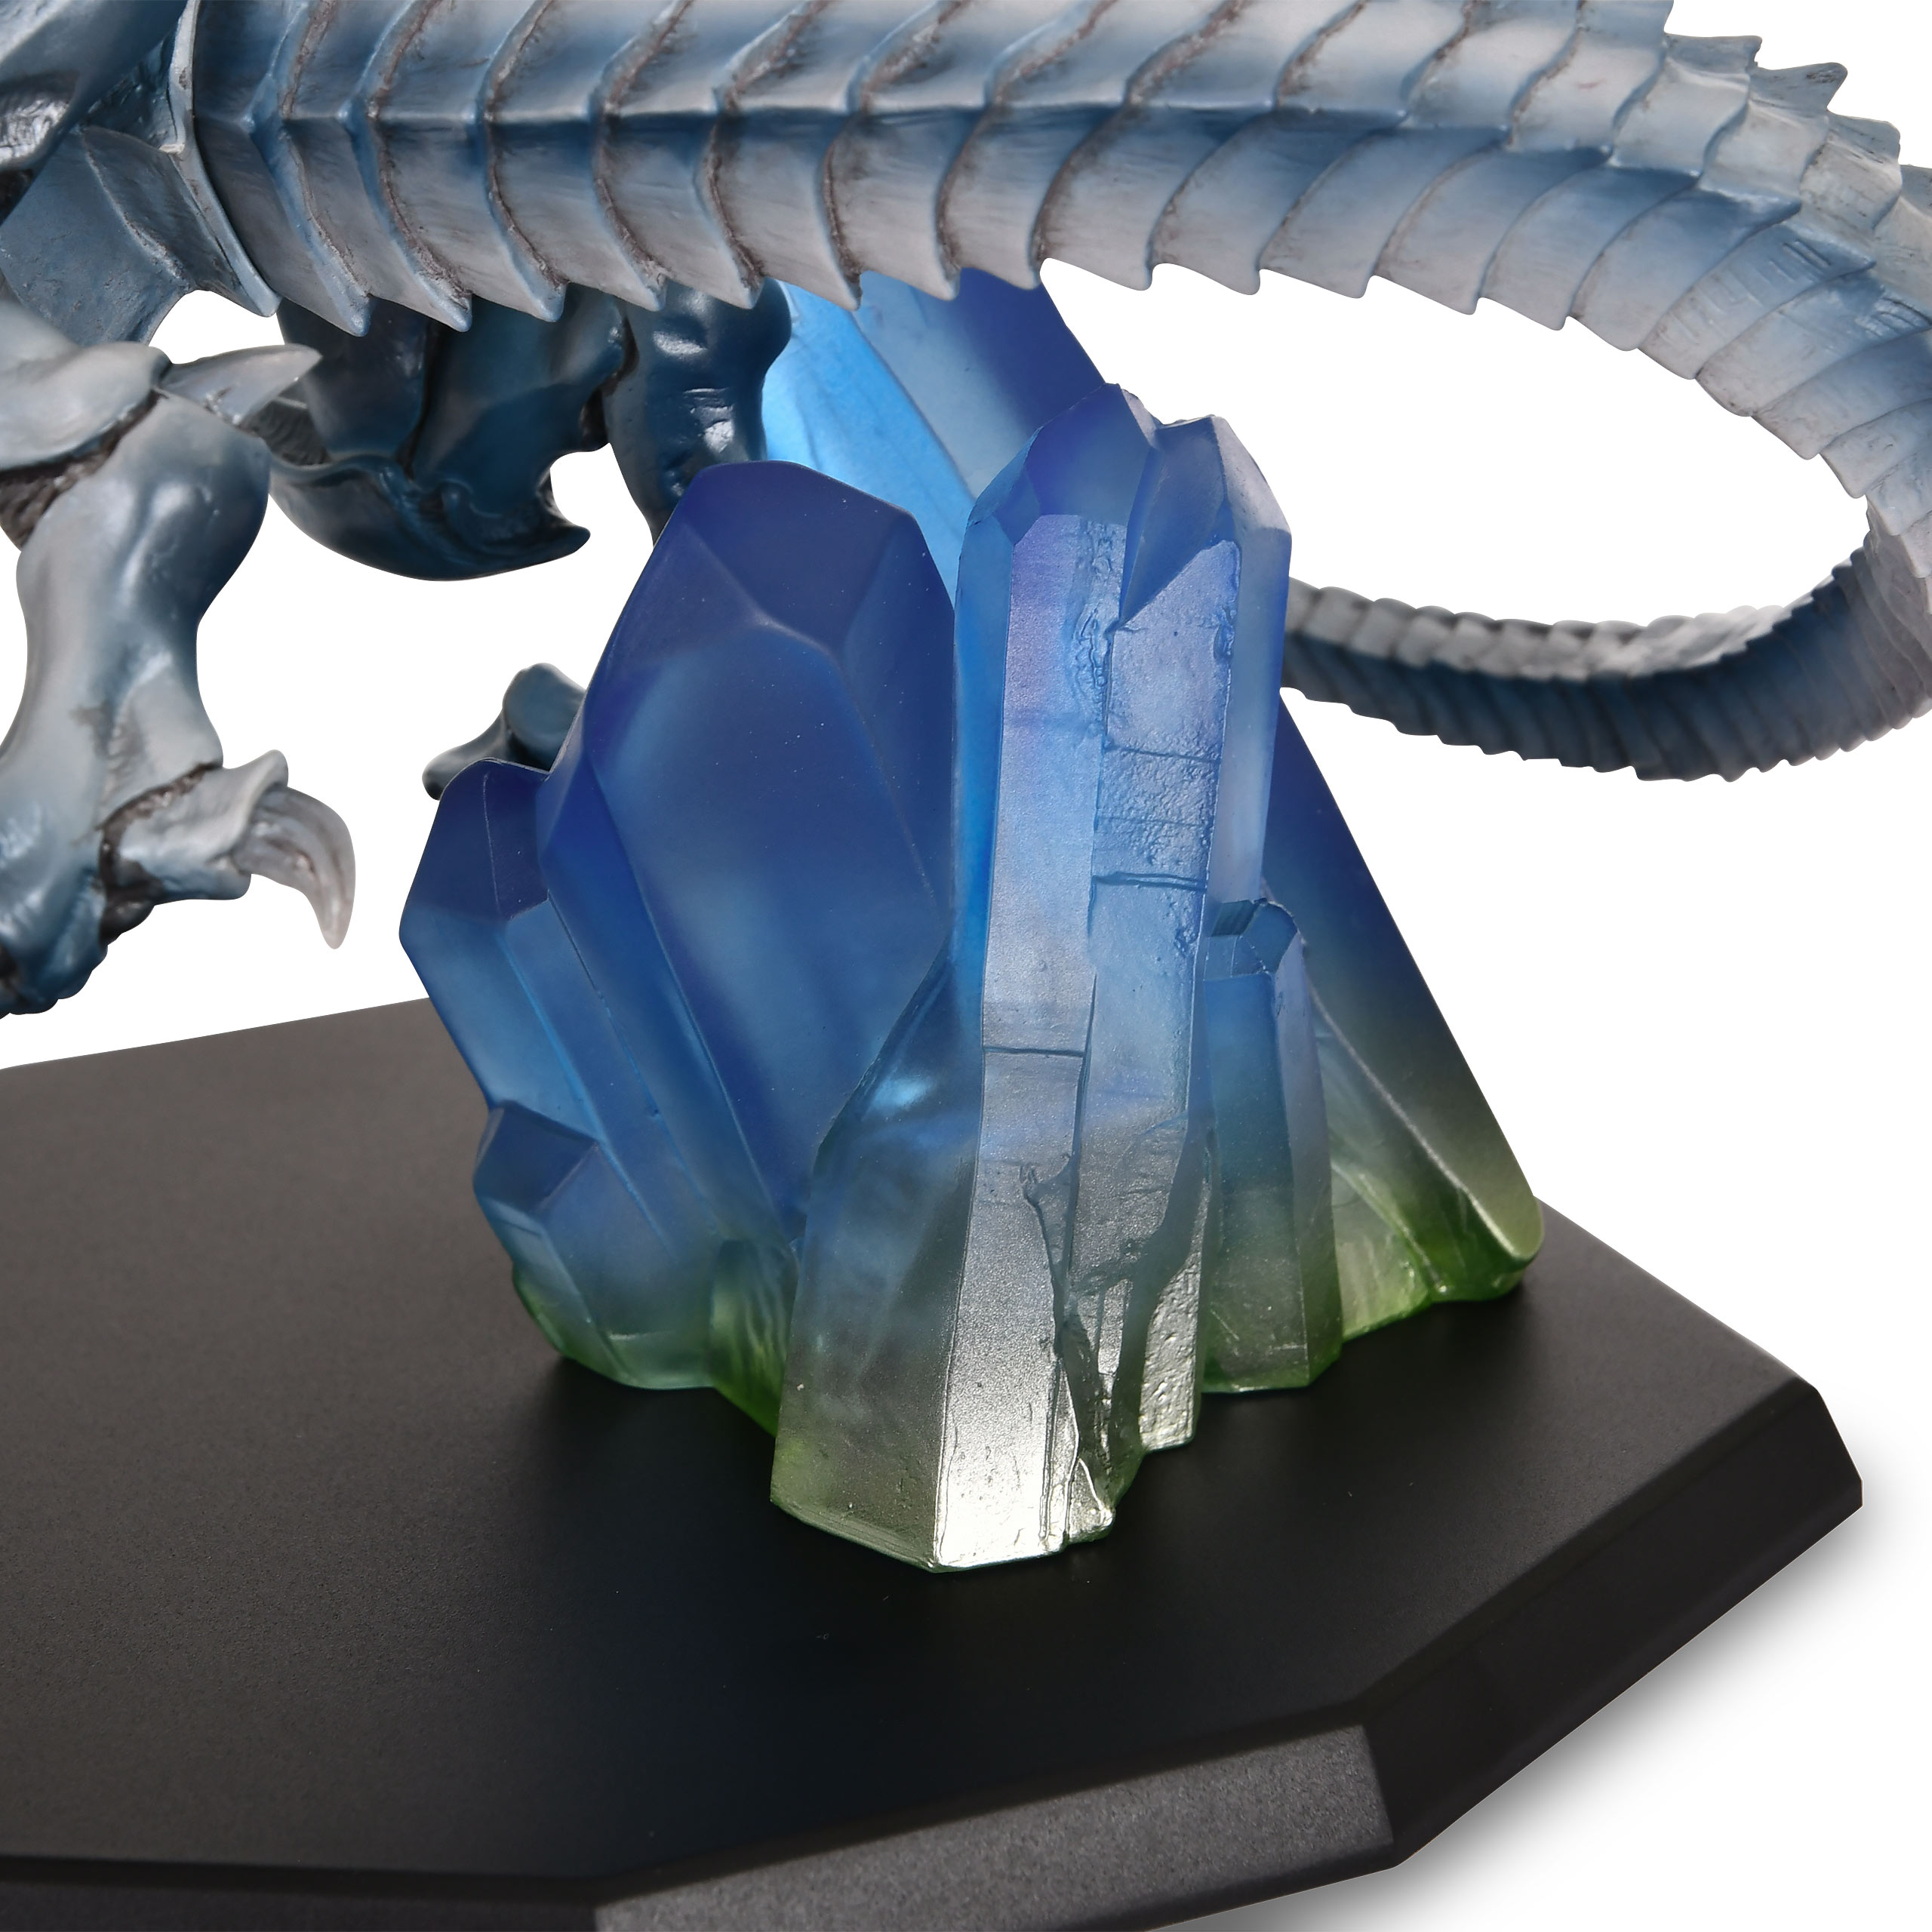 Yu-Gi-Oh! - Blauäugiger Weißer Drache Holographic Edition Statue